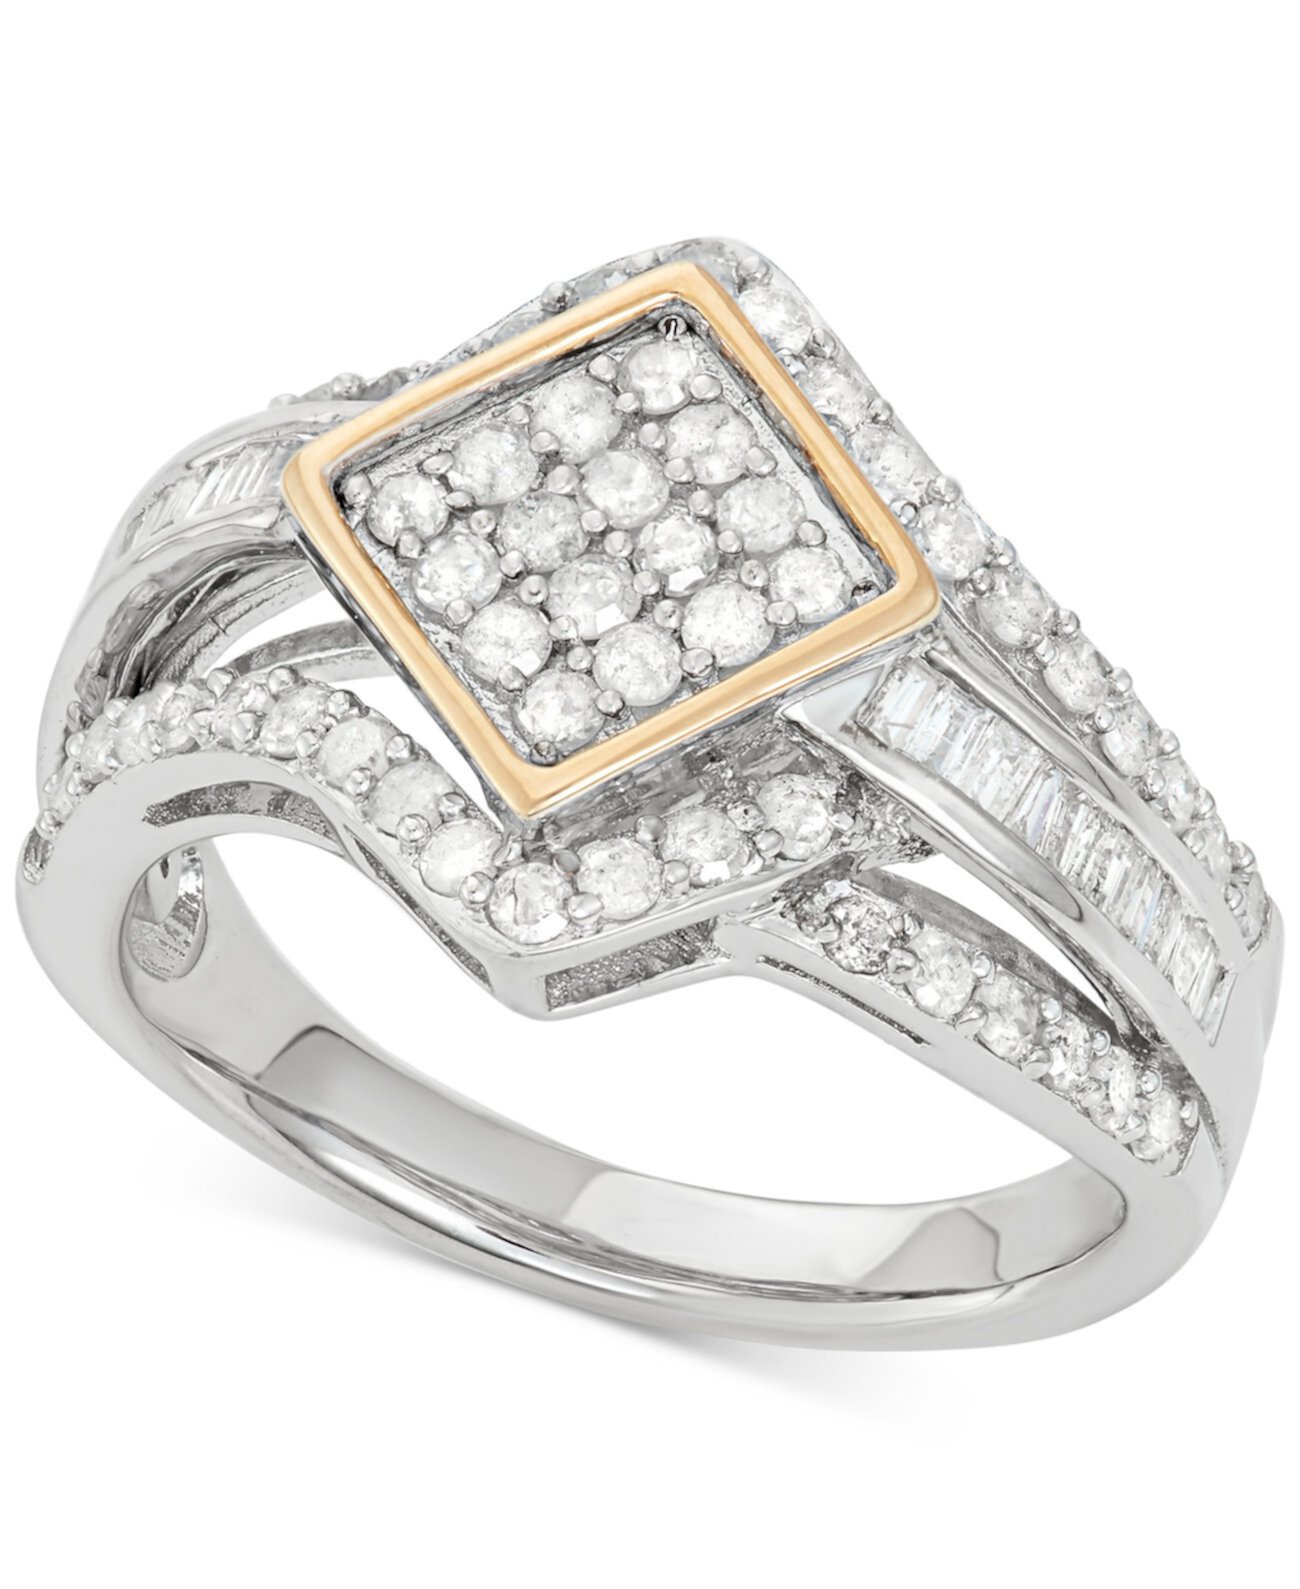 Кольцо с бриллиантом (1 карат) из золота 585 пробы и стерлингового серебра, созданное для Macy's Wrapped in Love